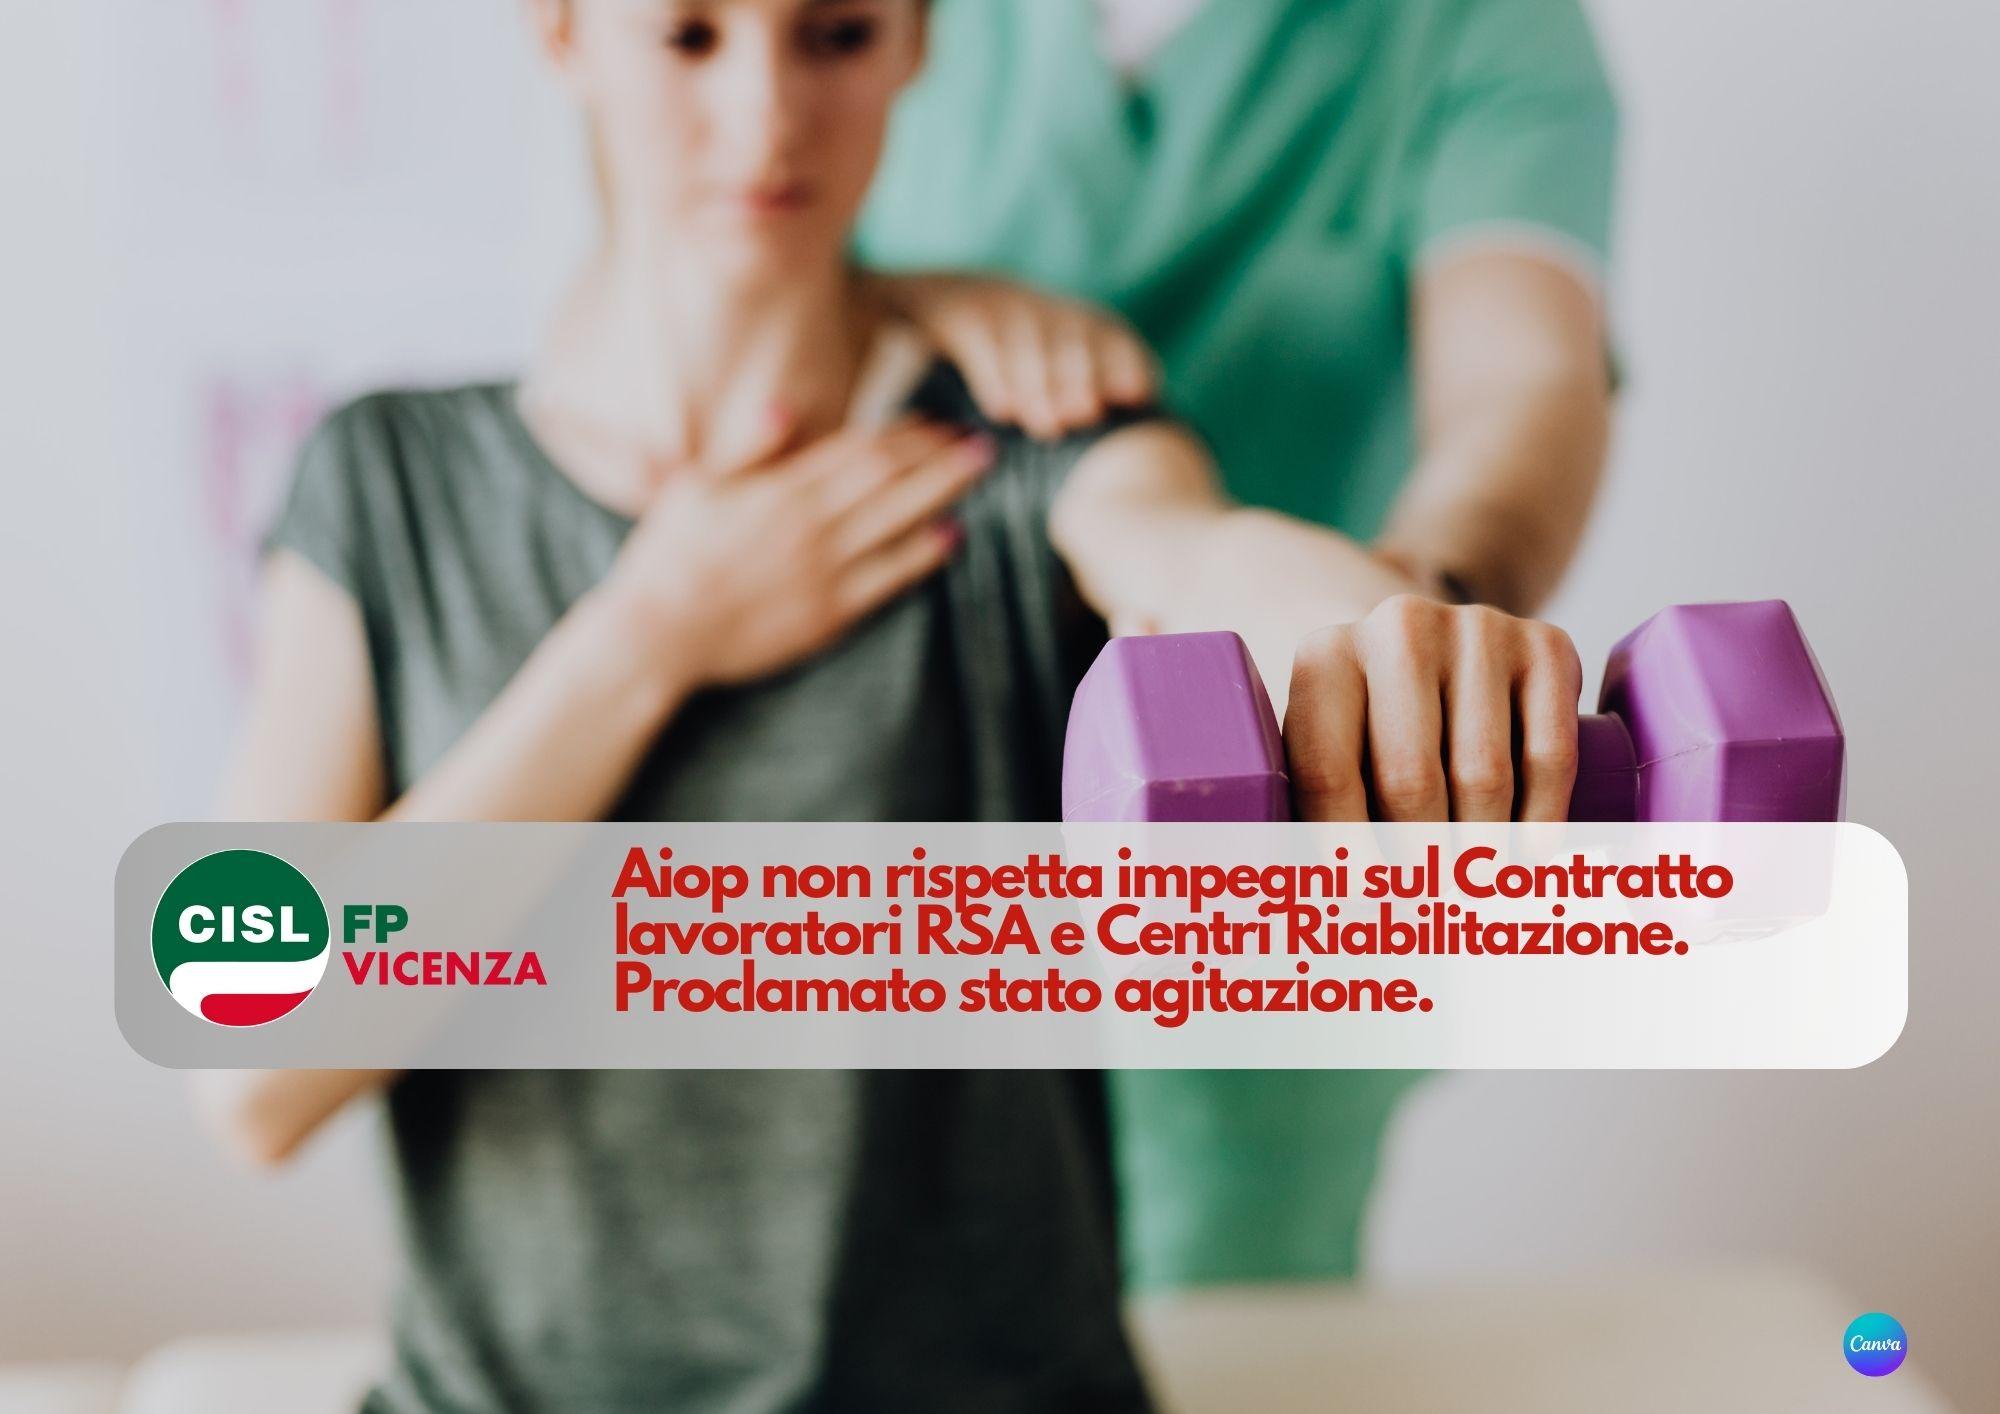 CISL FP Vicenza. Aiop non rispetta impegni sul Contratto lavoratori RSA. Proclamato stato agitazione.